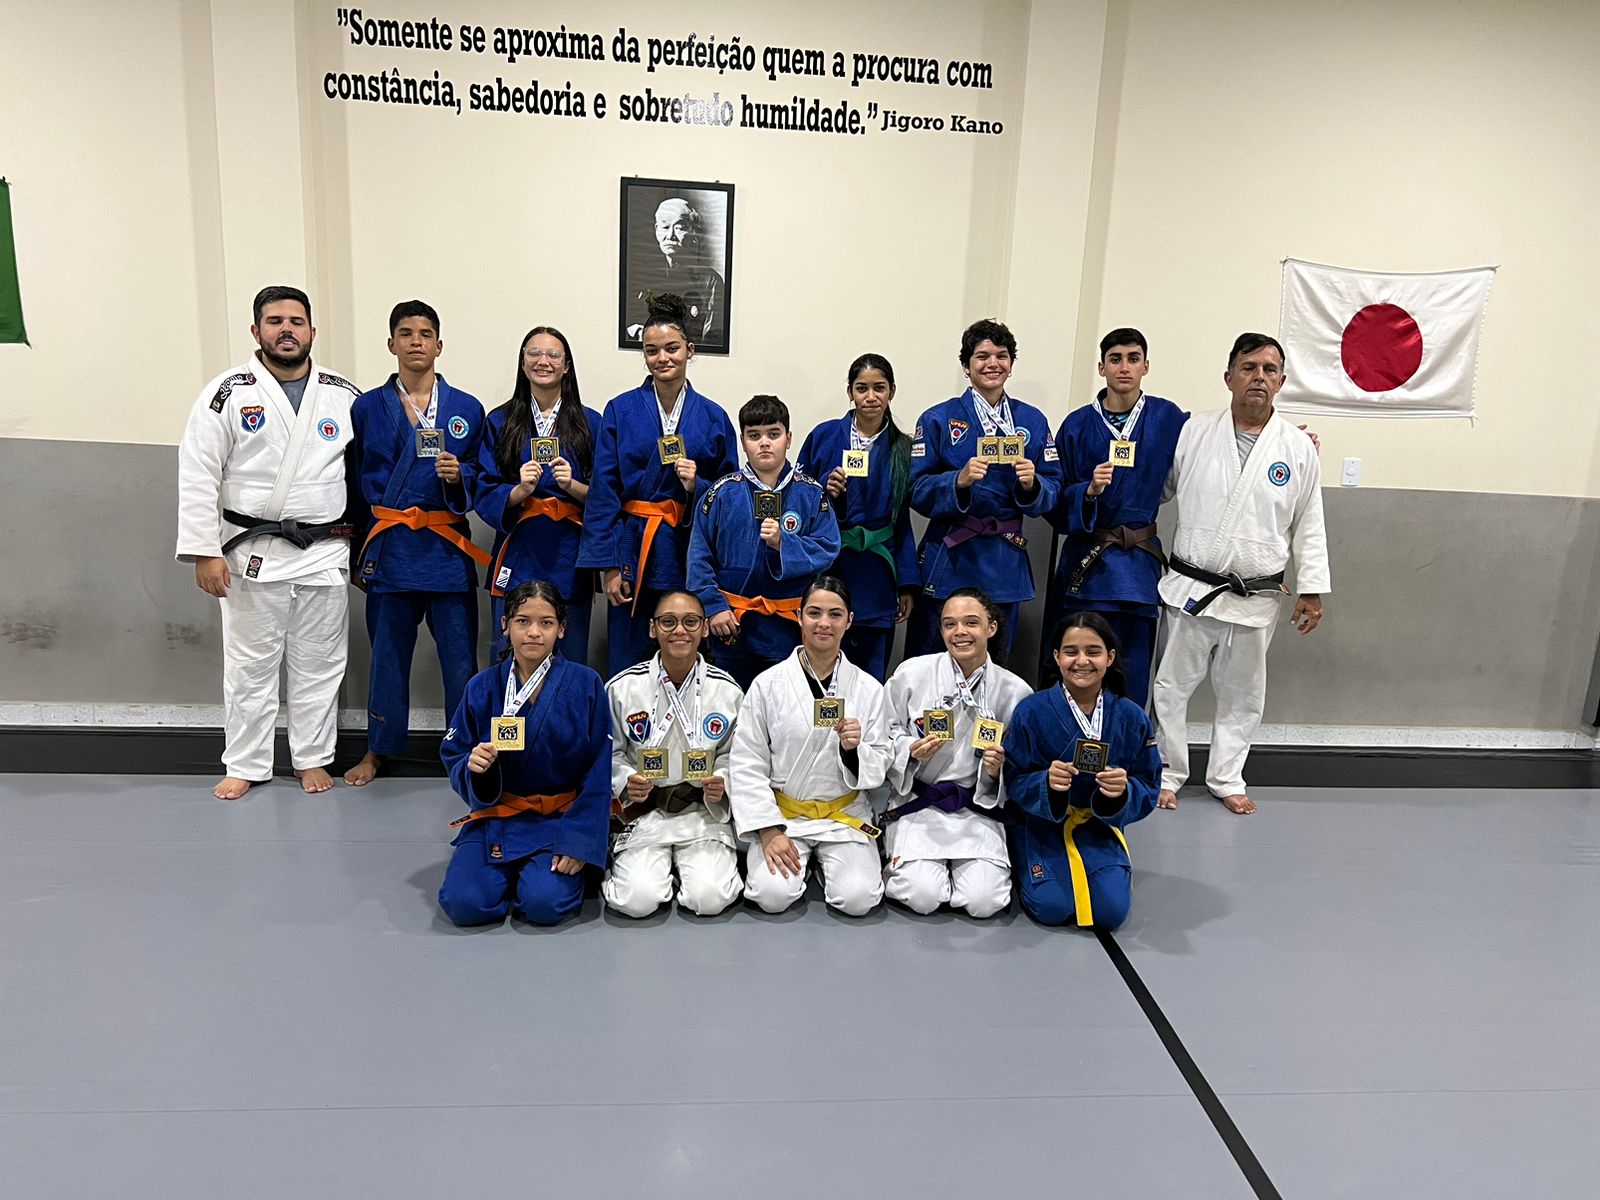 Judocas de ST vencem campeonato nacional